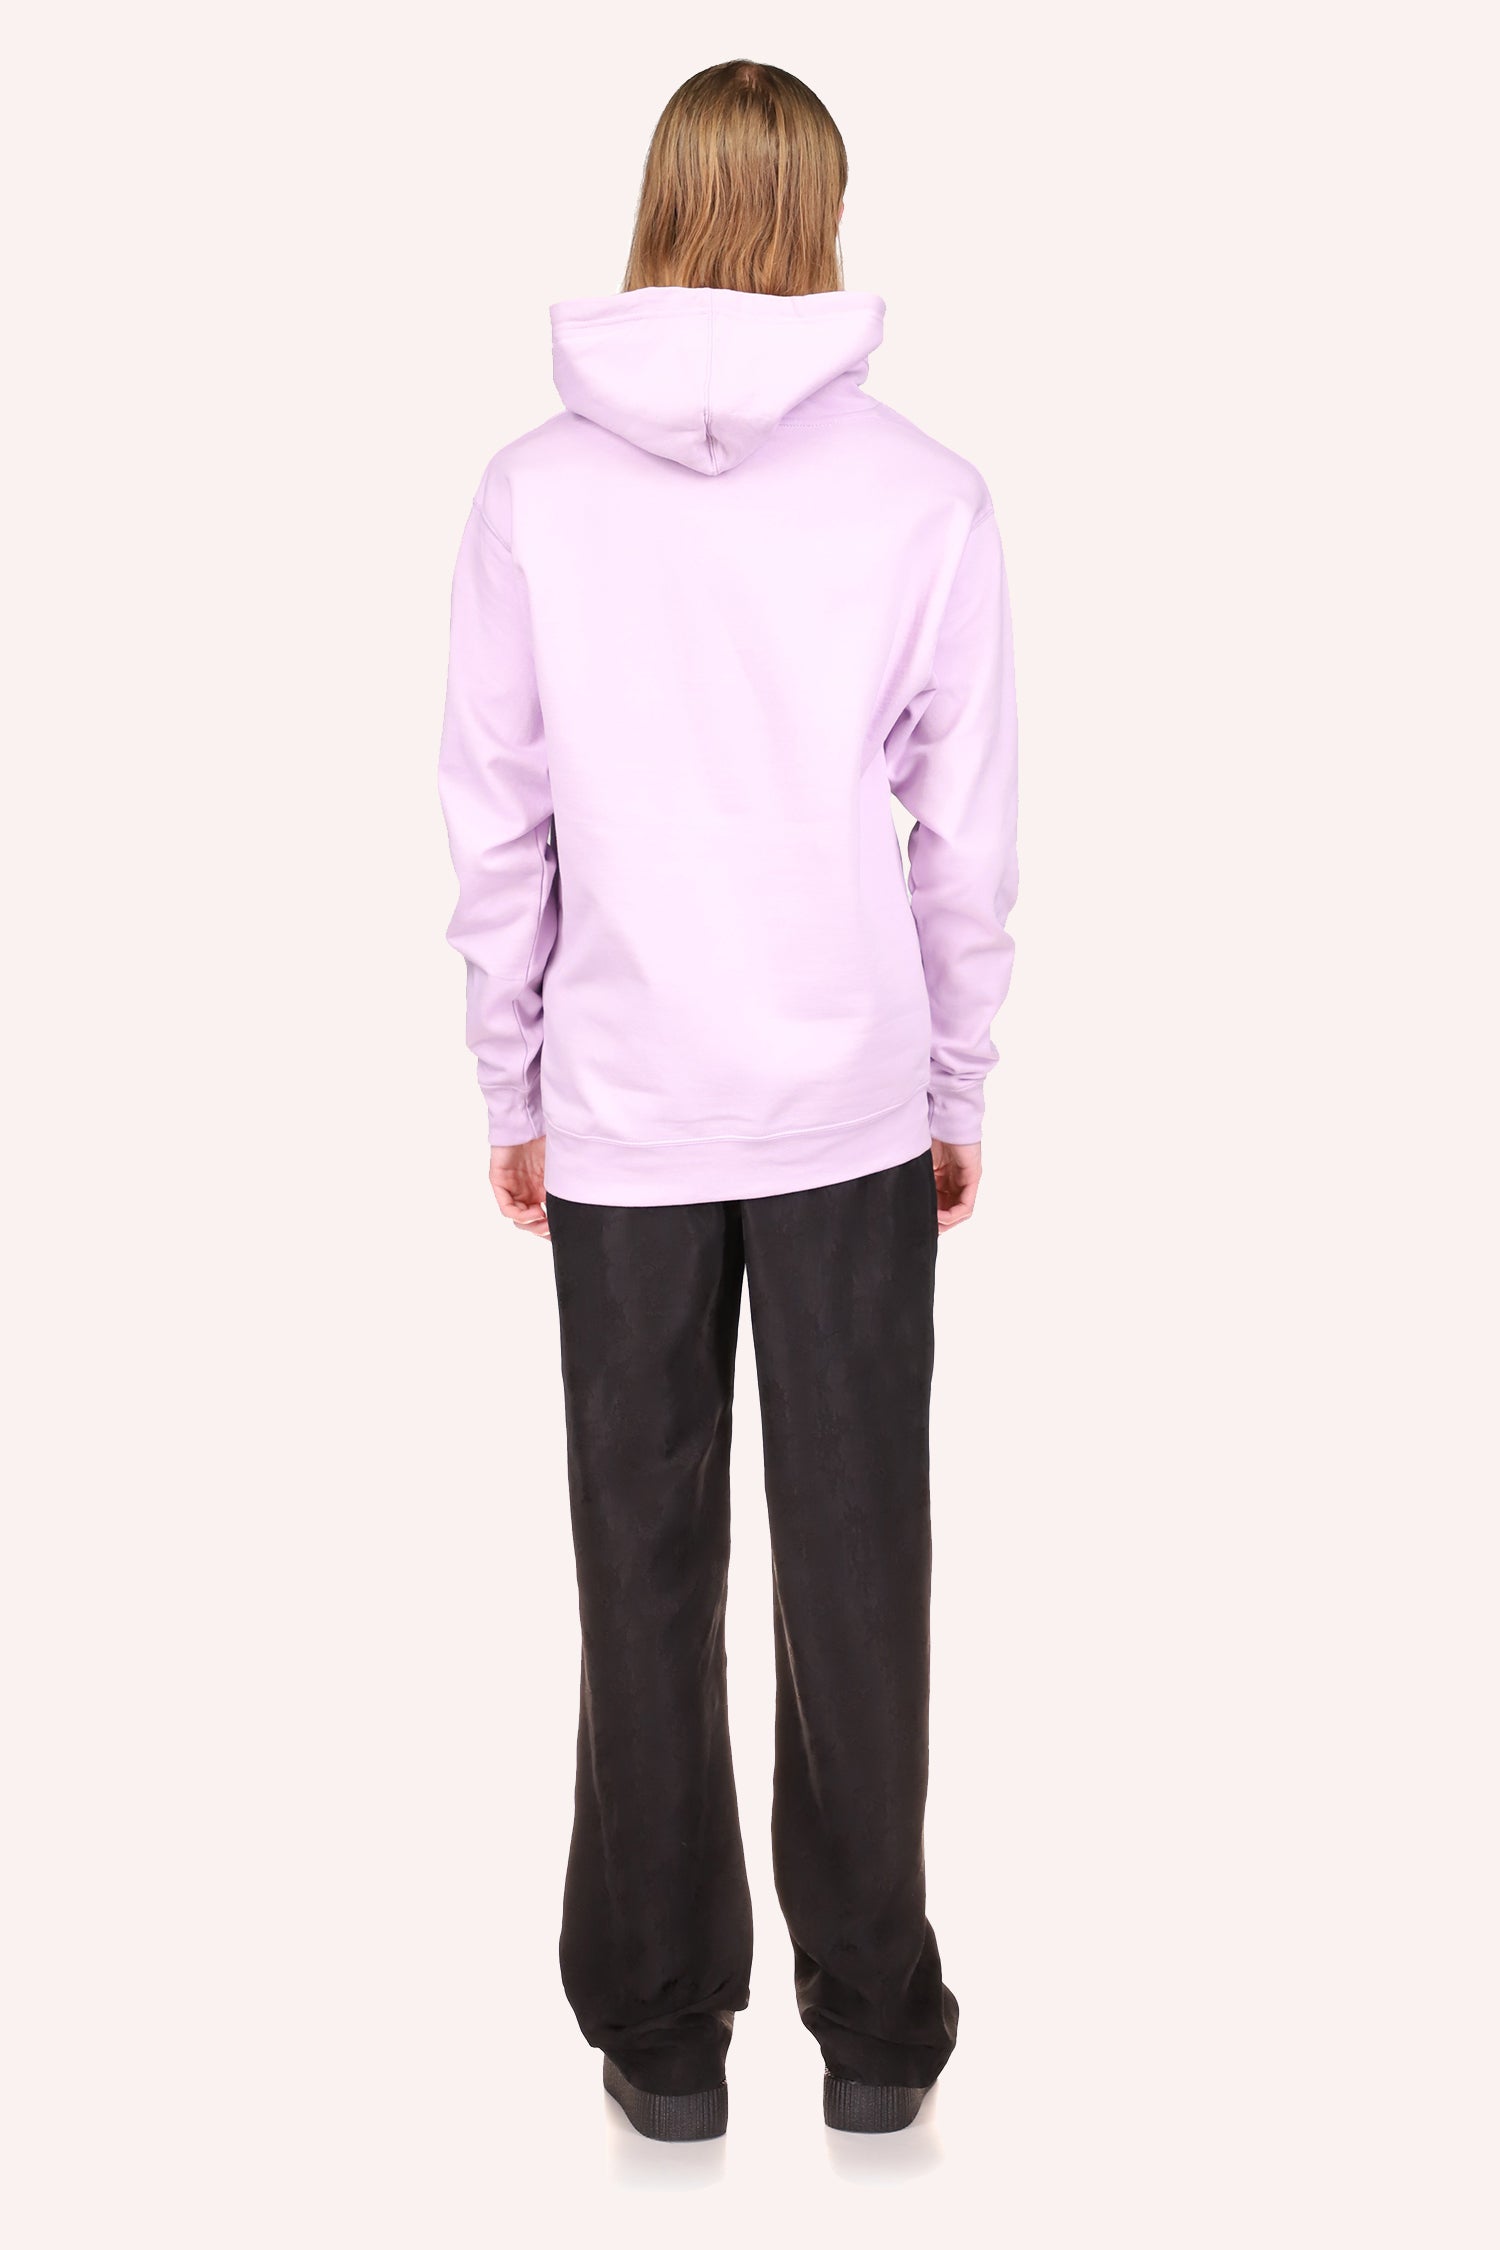 Mushroom Hoodie Lavender long sleeves hoodie sweatshirt, under hips long